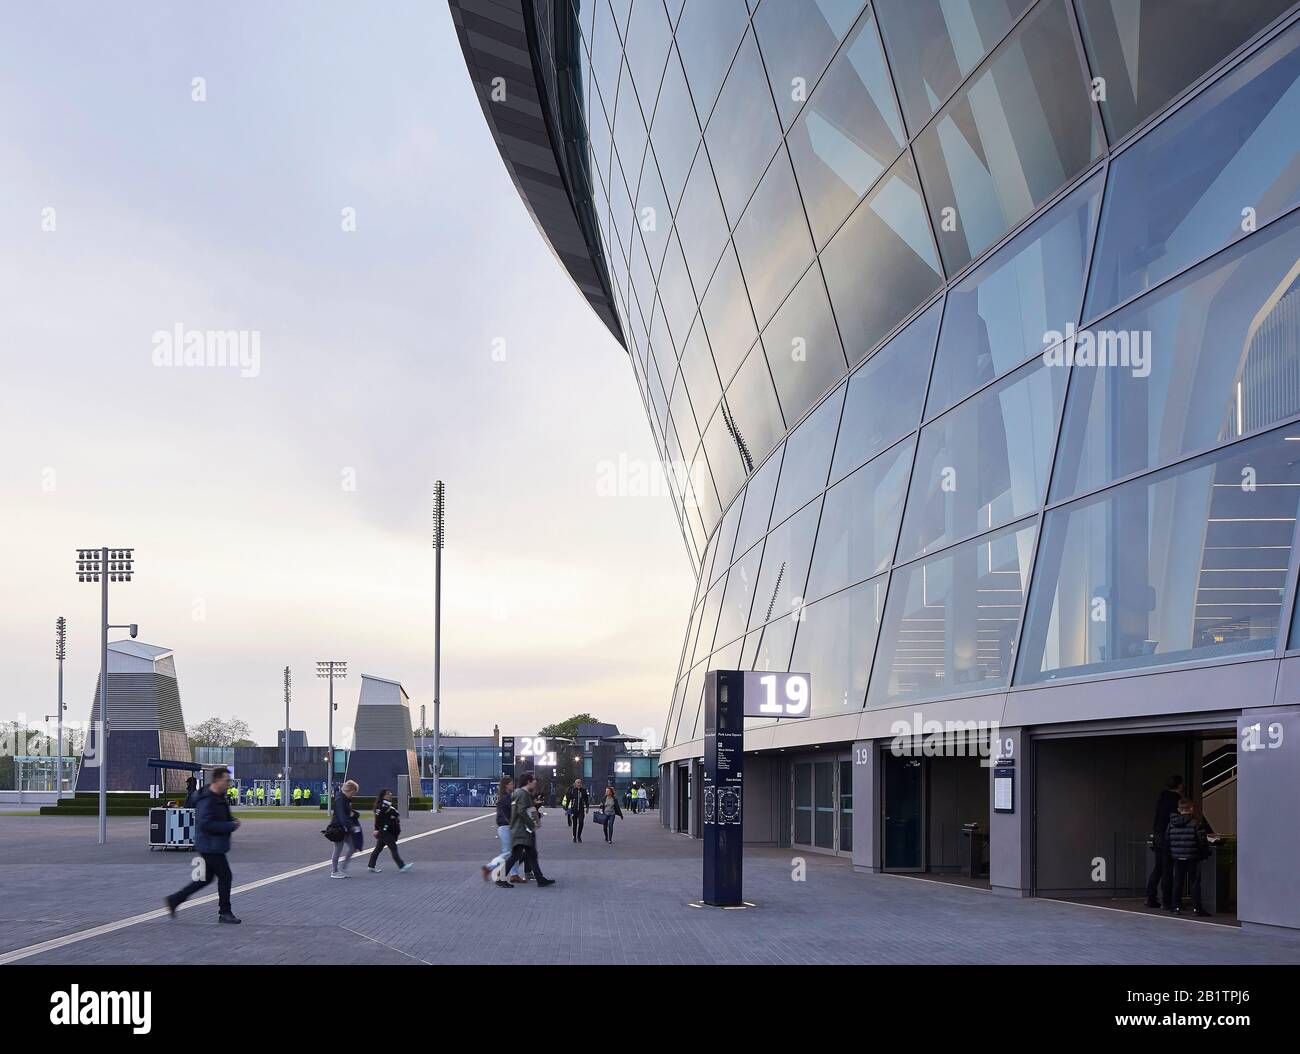 Système de guidage avec signalisation numérique éclairée à côté du stade. The New Tottenham Hotspur Stadium, Londres, Royaume-Uni. Architecte : Peuplé, 20 Banque D'Images